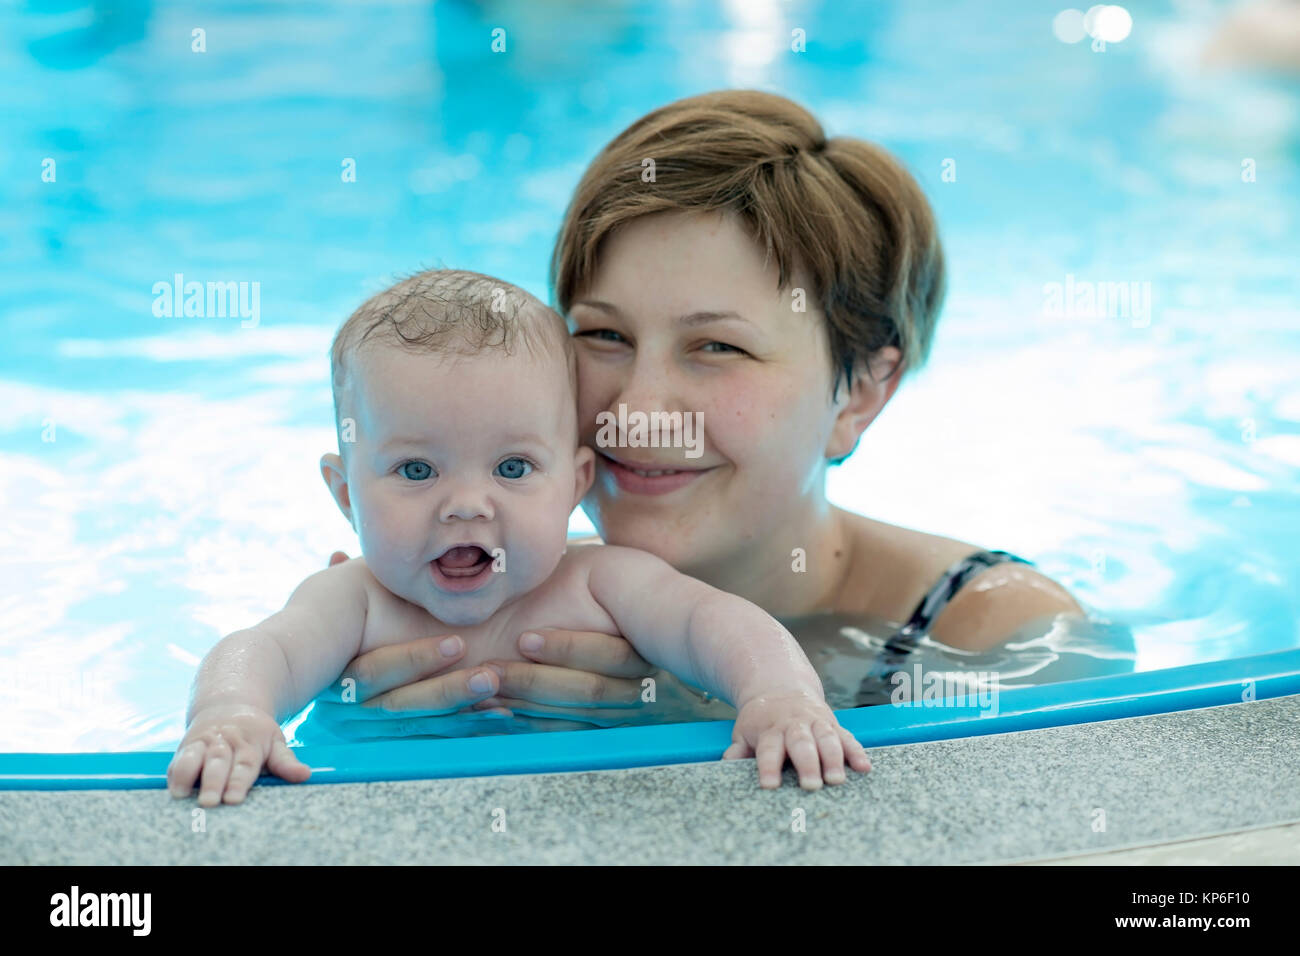 Kleinkind mit Mutter beim Babyschwimmen - baby swimming Stock Photo